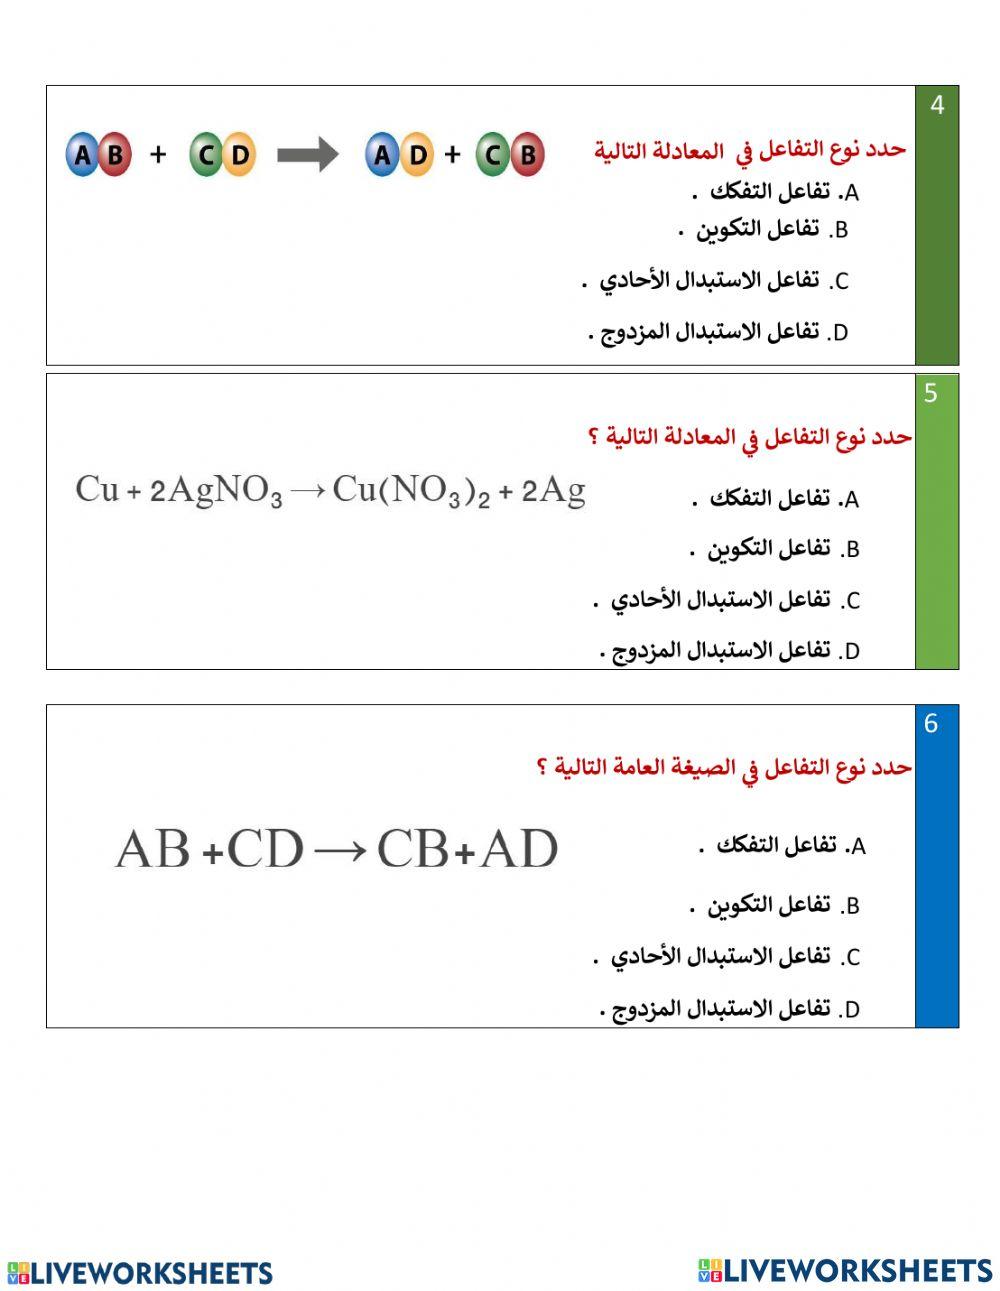 تقييم ختامي- انواع التفاعلات الكيميائية - جزء 2